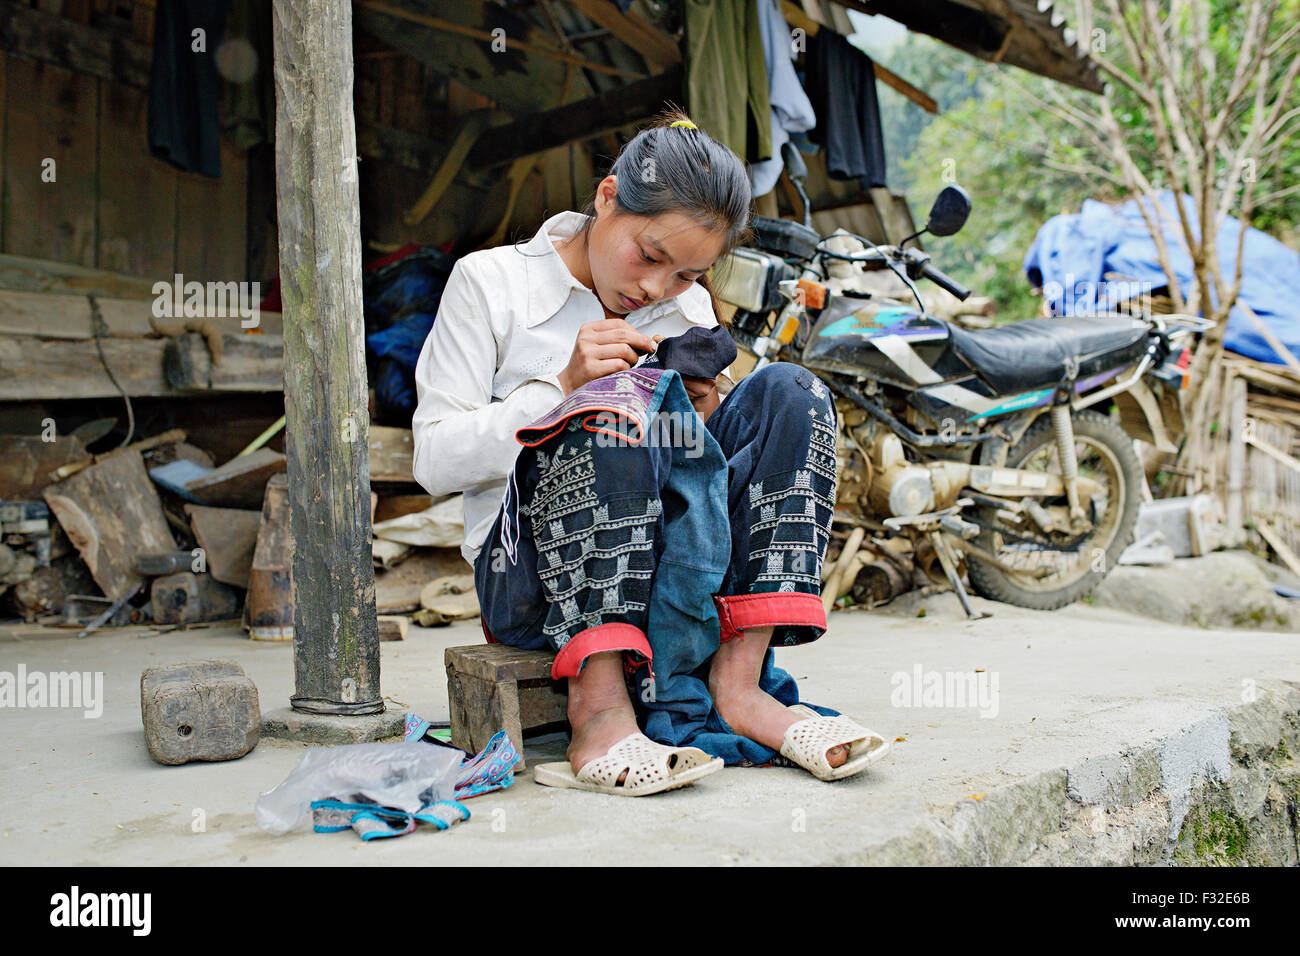 Les gens Dao (l'un des groupes autochtones dans le nord du Vietnam) sont célèbres pour leur artisanat. Sapa, Vietnam. Banque D'Images